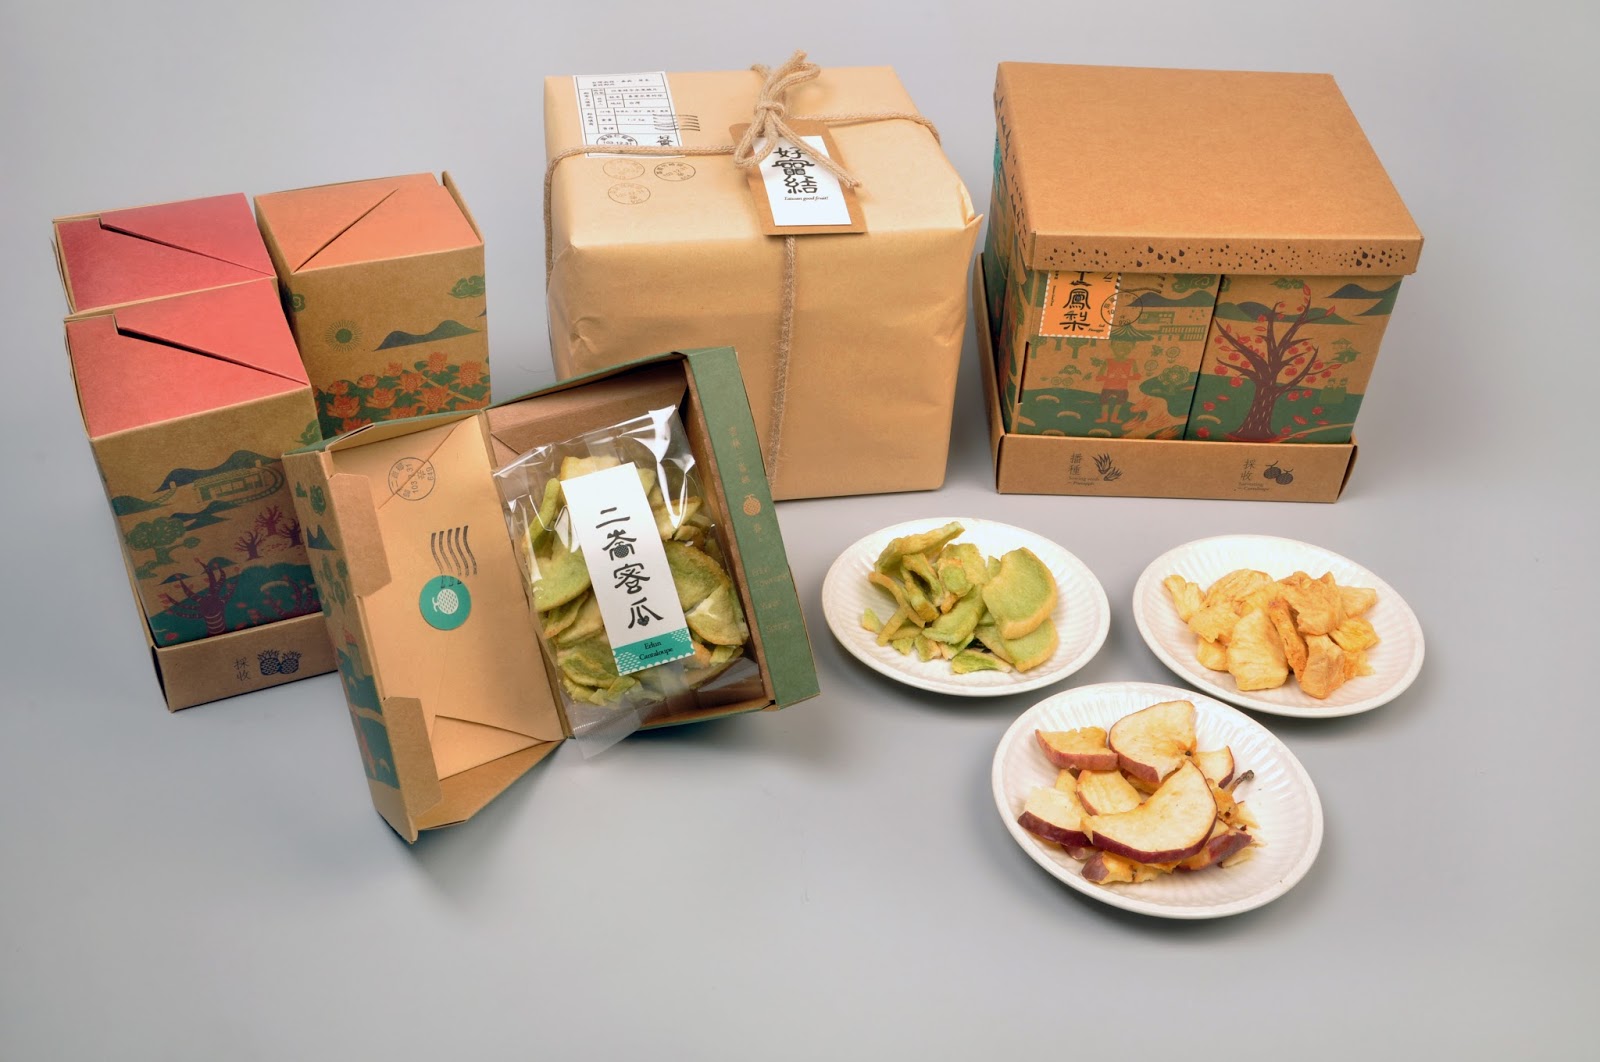 水果包装设计，果蔬包装箱设计，水果包装设计公司，果品包装设计公司，上海包装设计公司